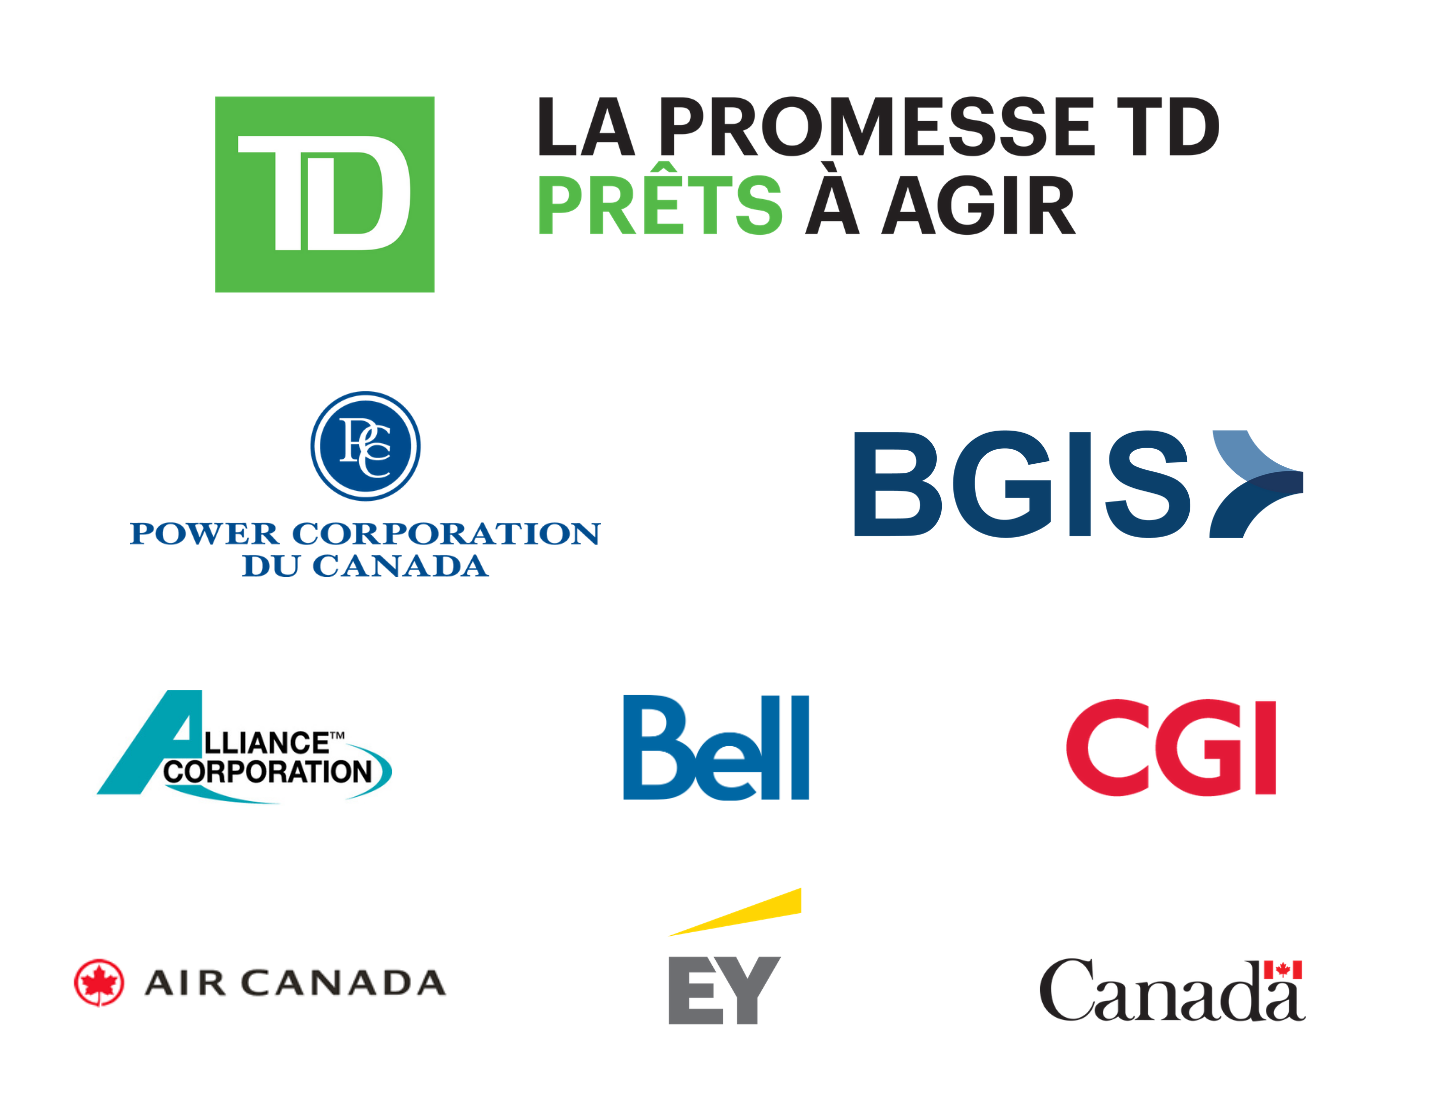 La promesse TD Prêts à agir - Power Corporation du Canada - BGIS - Alliance Corporation - Bell - CGI - Air Canada - EY - Affaires mondiales Canada